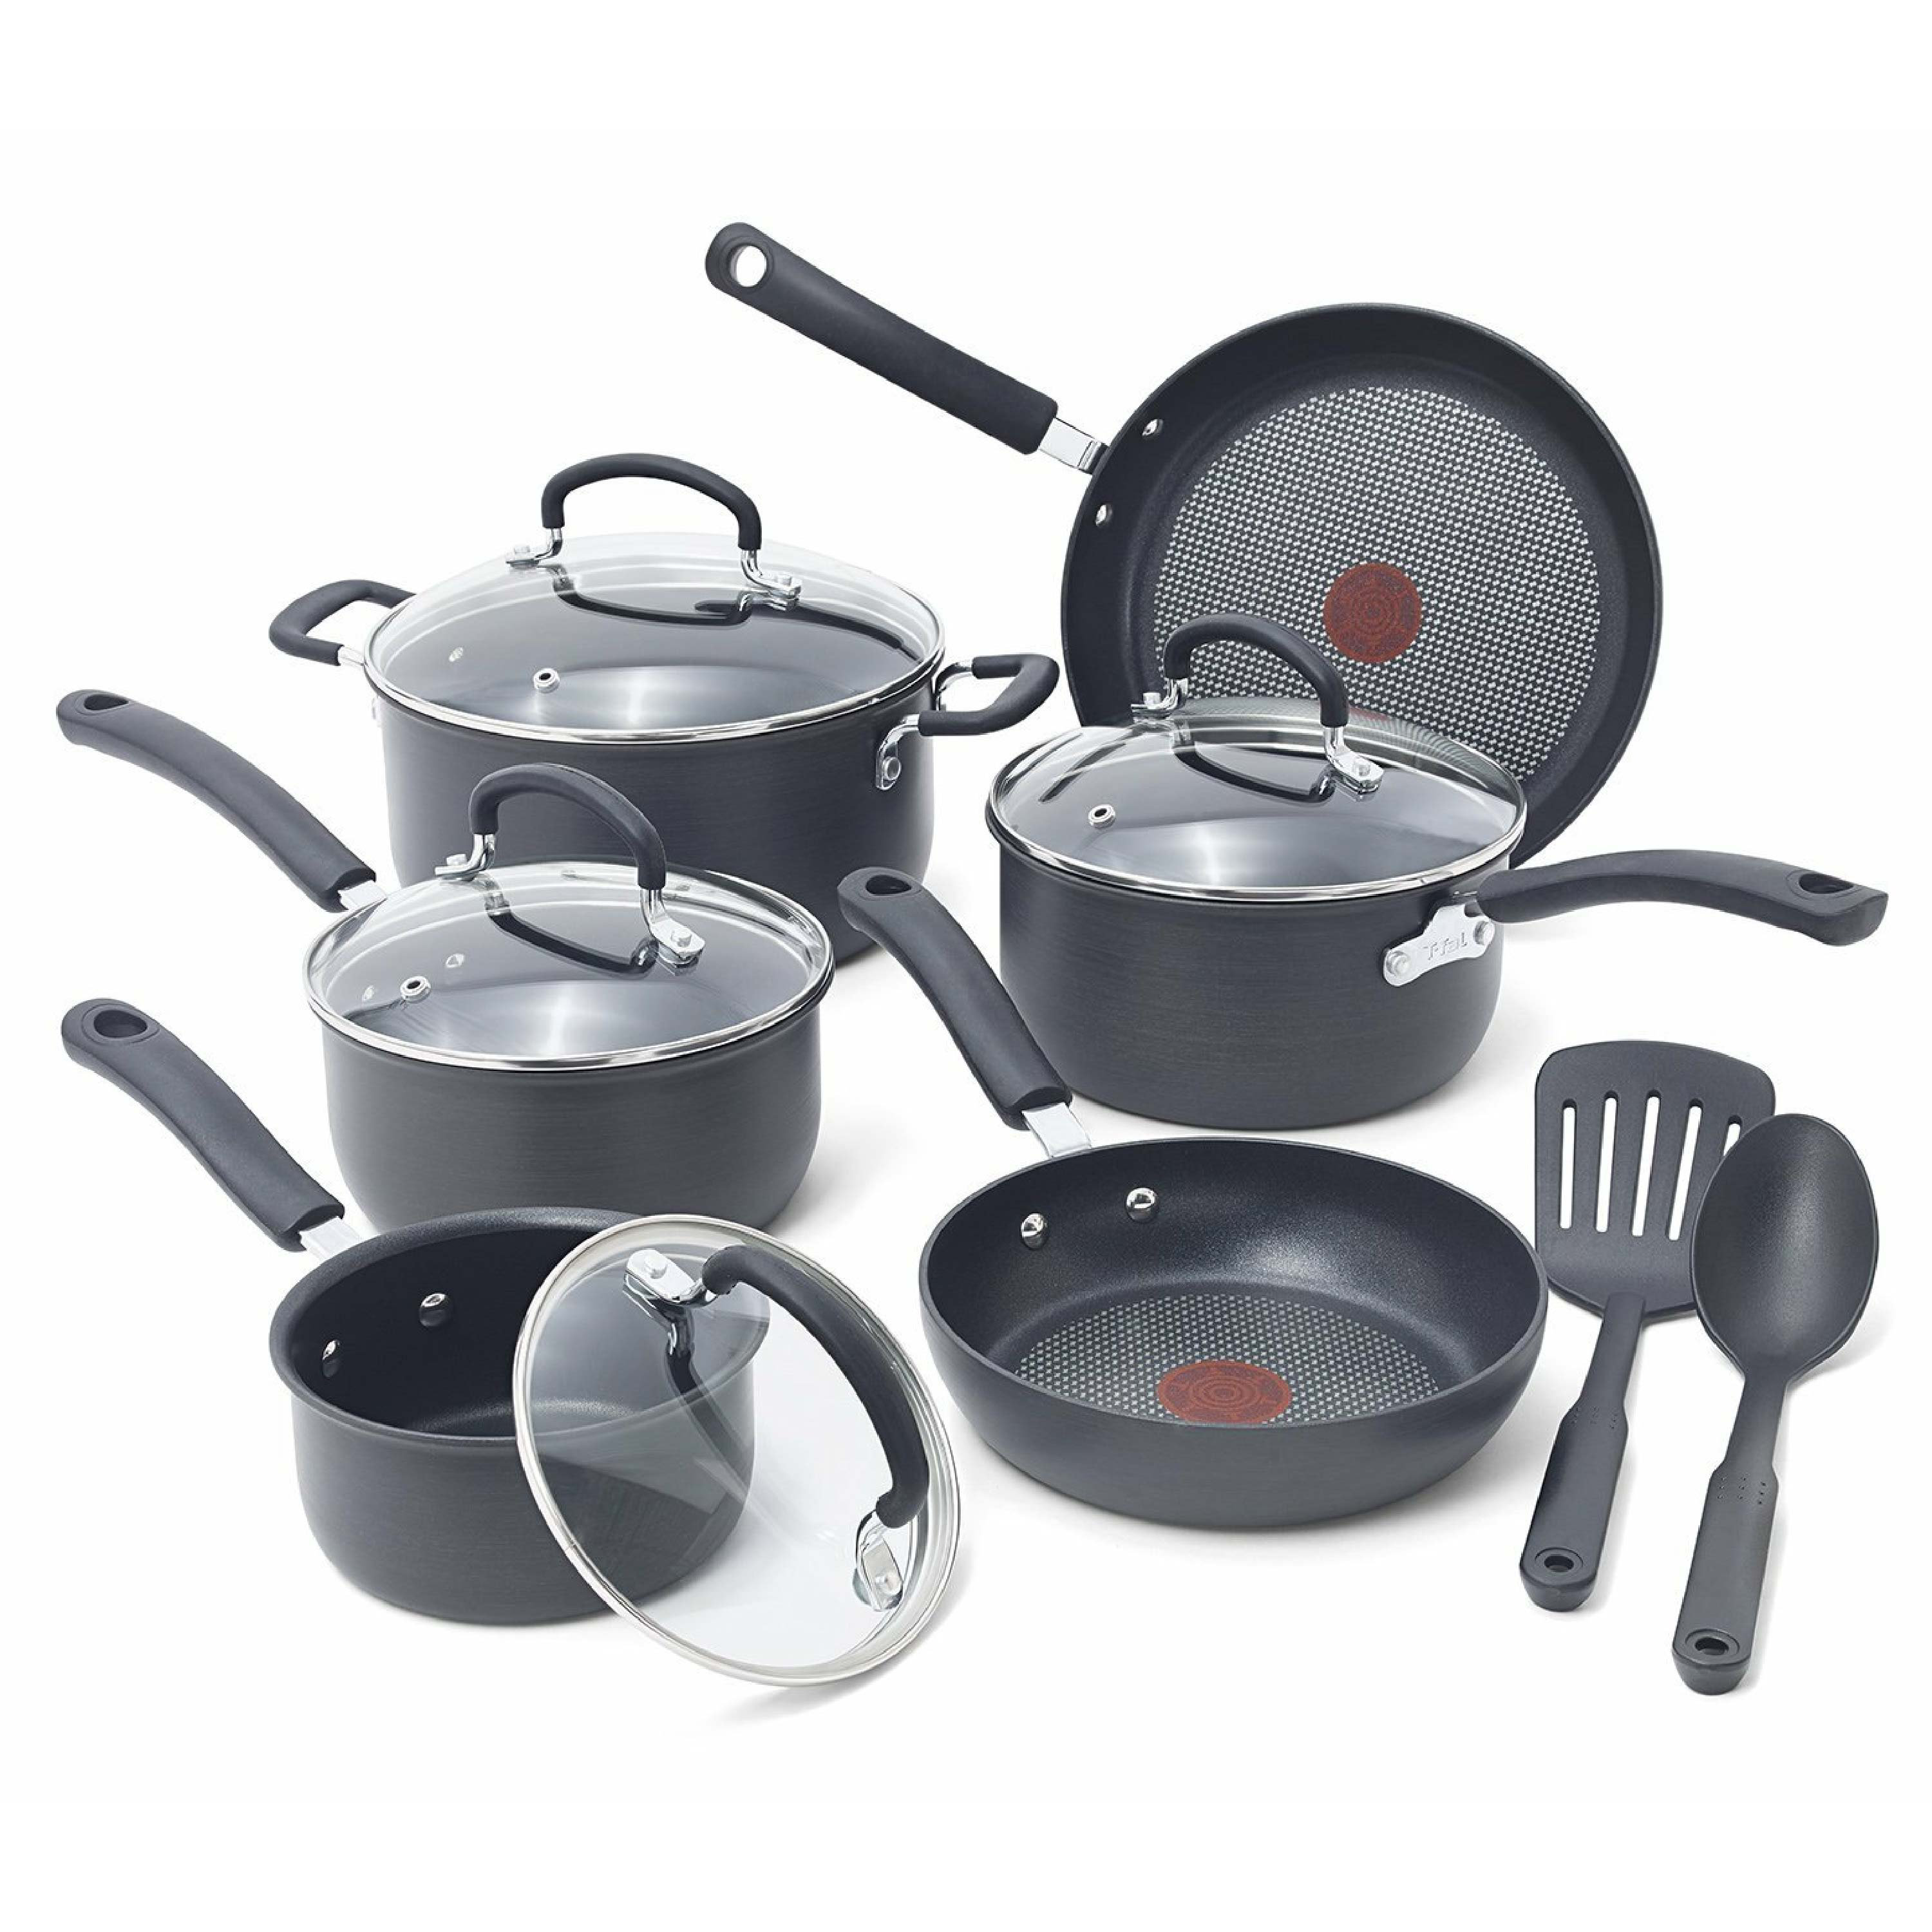 https://assets.wfcdn.com/im/83137790/compr-r85/2072/207244737/t-fal-ultimate-hard-anodized-aluminum-nonstick-cookware-set-cooking-utensils-12-piece.jpg